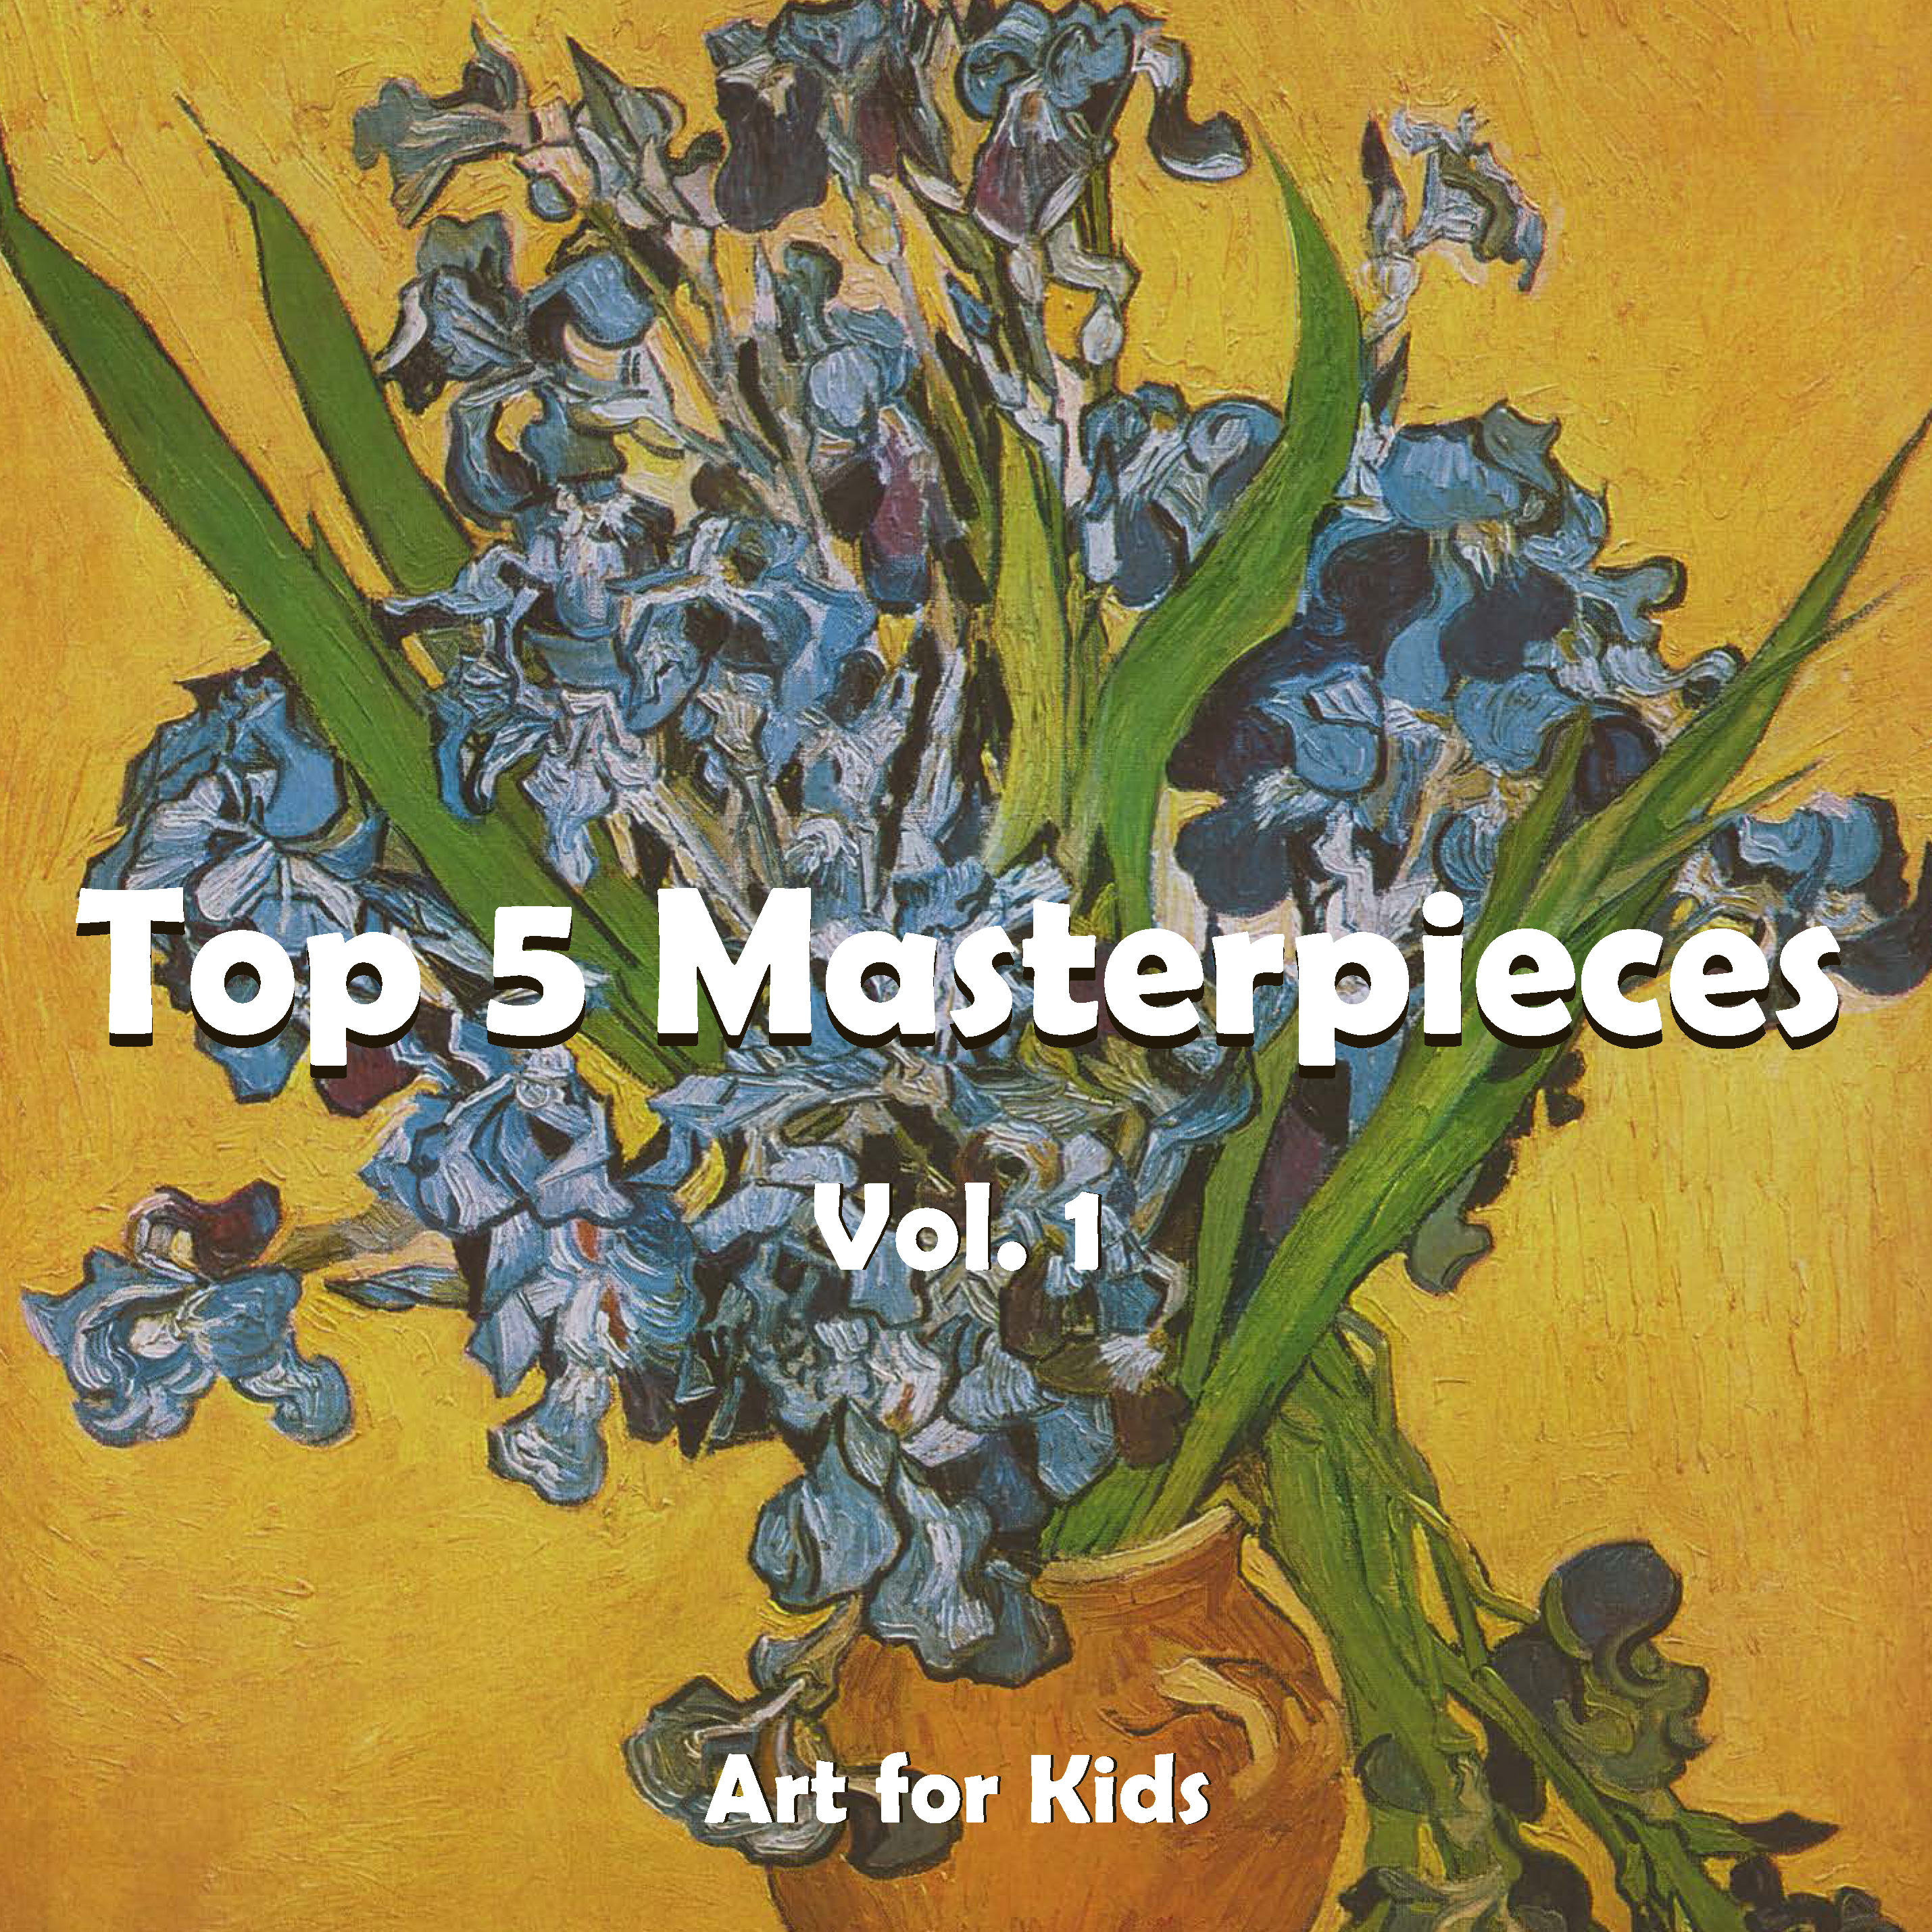 Top 5 Masterpieces Vol. 1